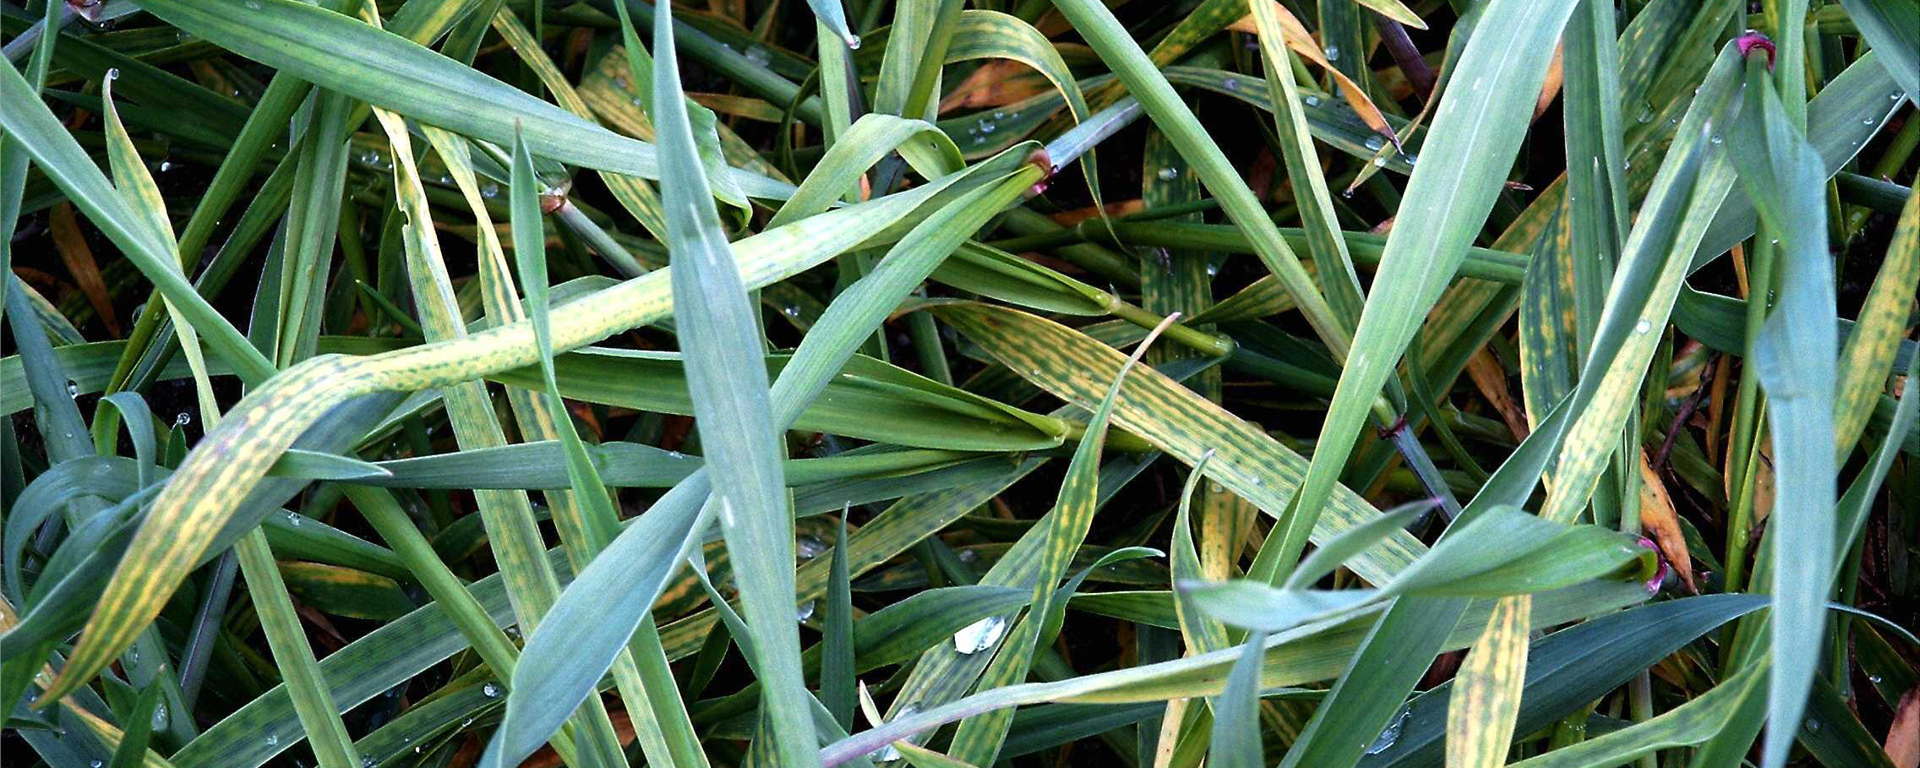 Magnesiummangel beginnt beim Weizen mit einer perlschnurartigen Aufkettung des Chlorophylls in den älteren Blättern, geht dann über in streifenartige Chlorosen bis hin zu Nekrosen und endet in starker Ertragsdepression.